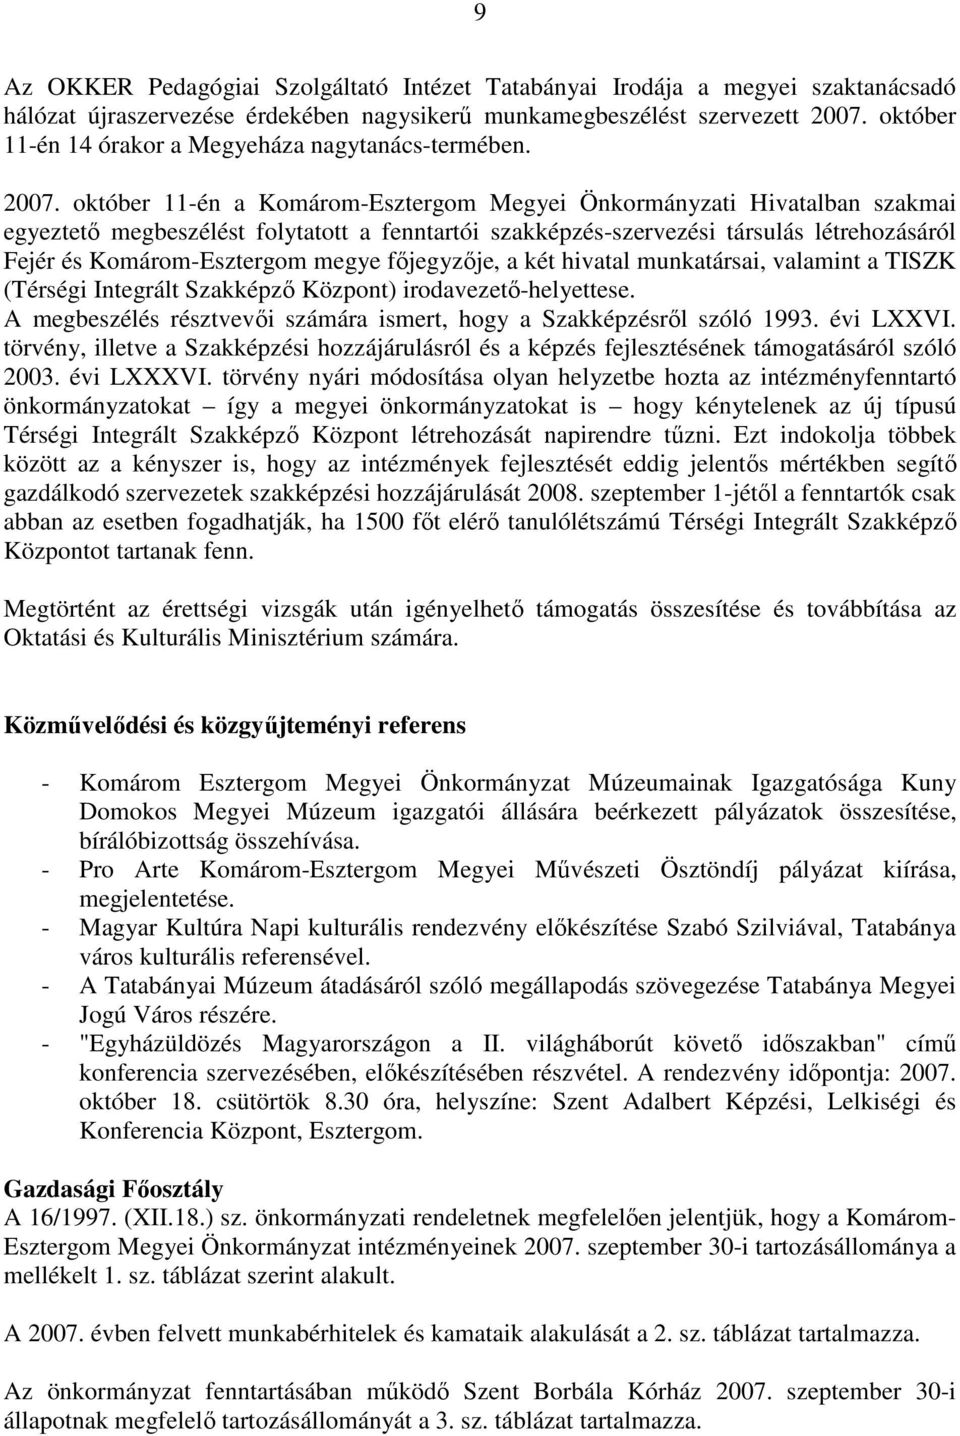 október 11-én a Komárom-Esztergom Megyei Önkormányzati Hivatalban szakmai egyeztetı megbeszélést folytatott a fenntartói szakképzés-szervezési társulás létrehozásáról Fejér és Komárom-Esztergom megye